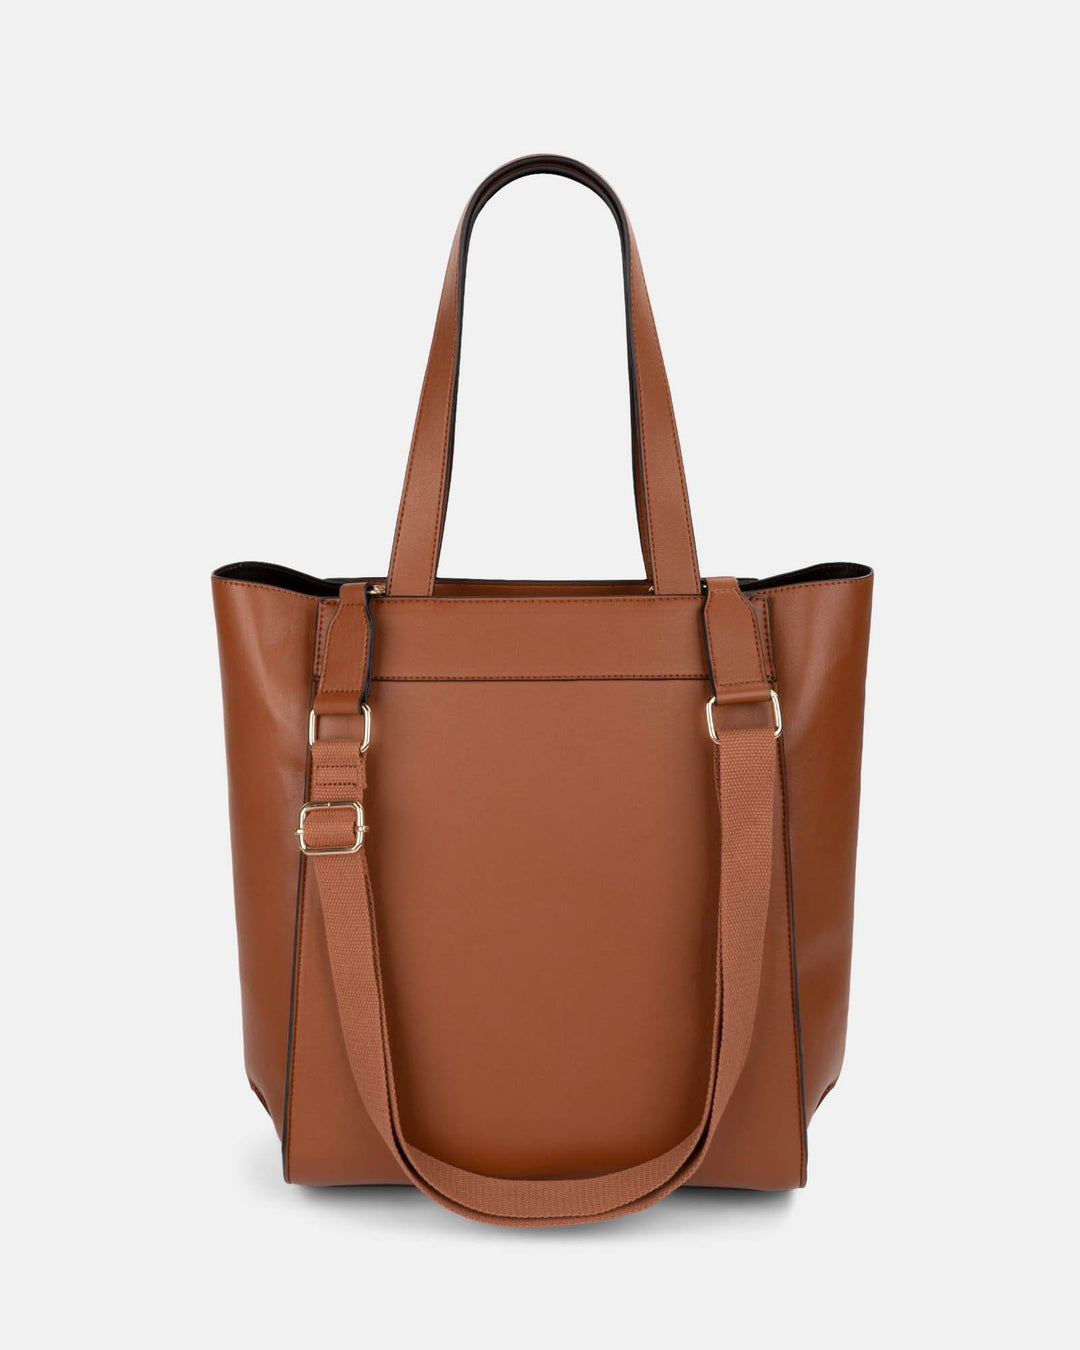 Elegant Printing Tote Handbags For Mom Vegan Leather Shopping Crossbody  Bags Ladies Purse Women's Shoulder Bags, Fashion Handbags